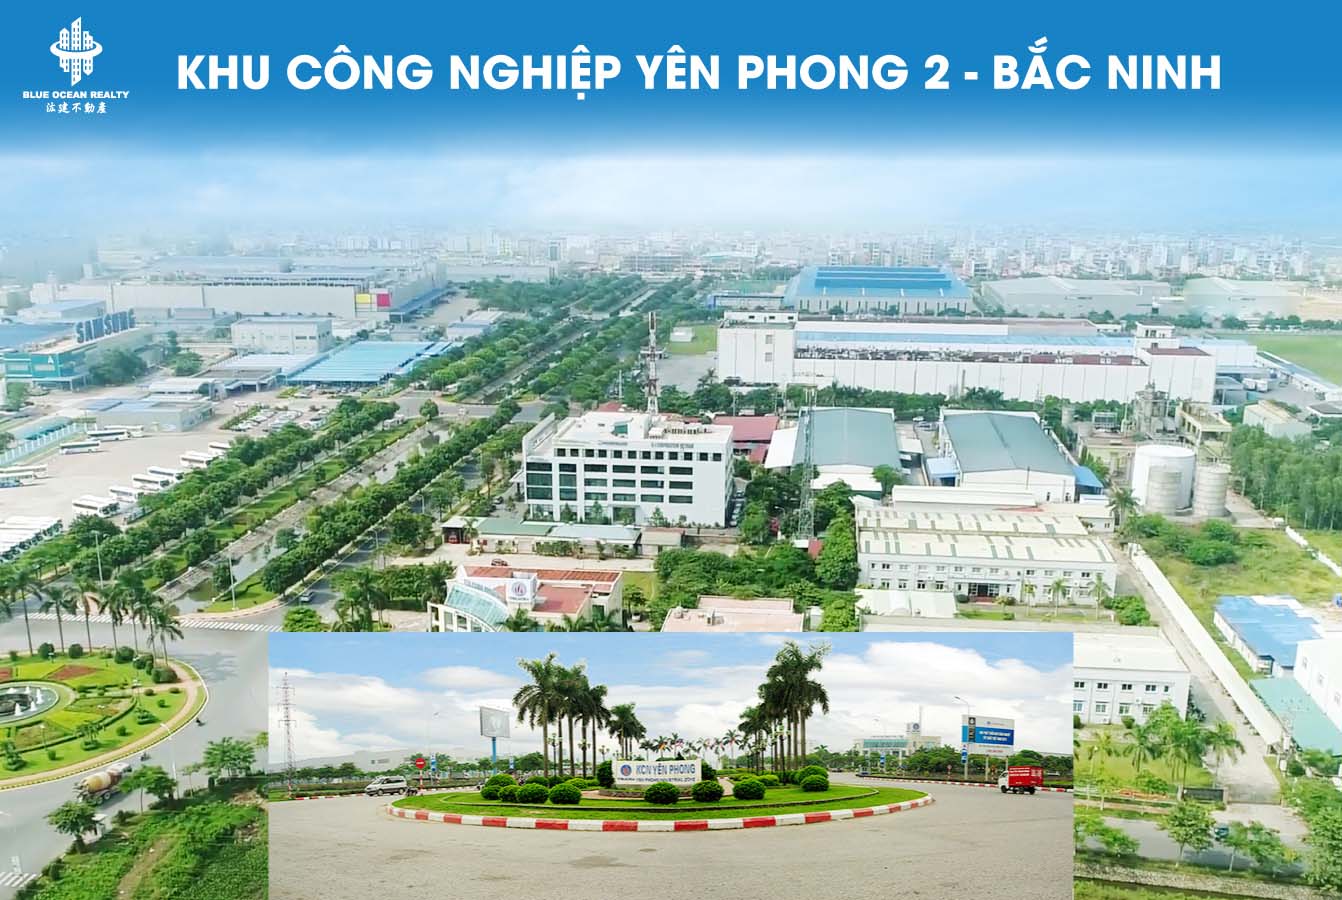 Khu công nghiệp Yên Phong 2 - Bắc Ninh